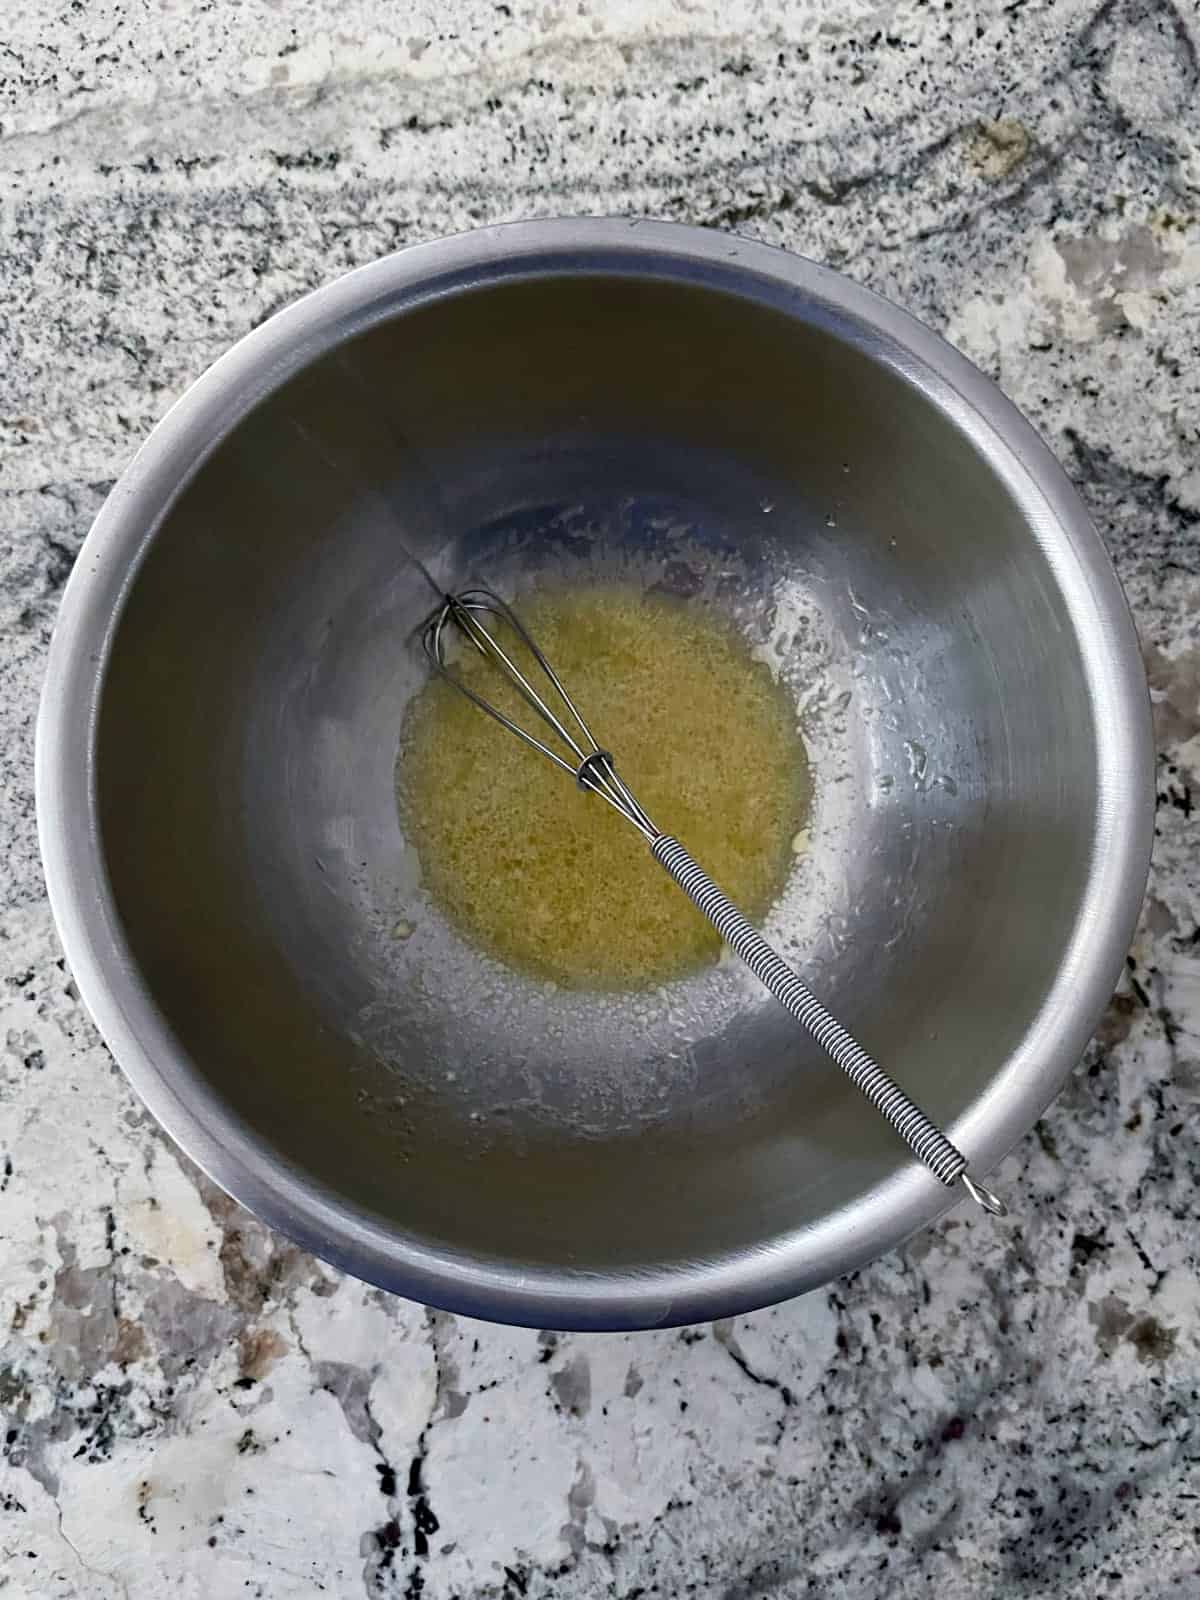 Whisking olive oil, lemon juice, dijon mustard, salt and pepper in mixing bowl.